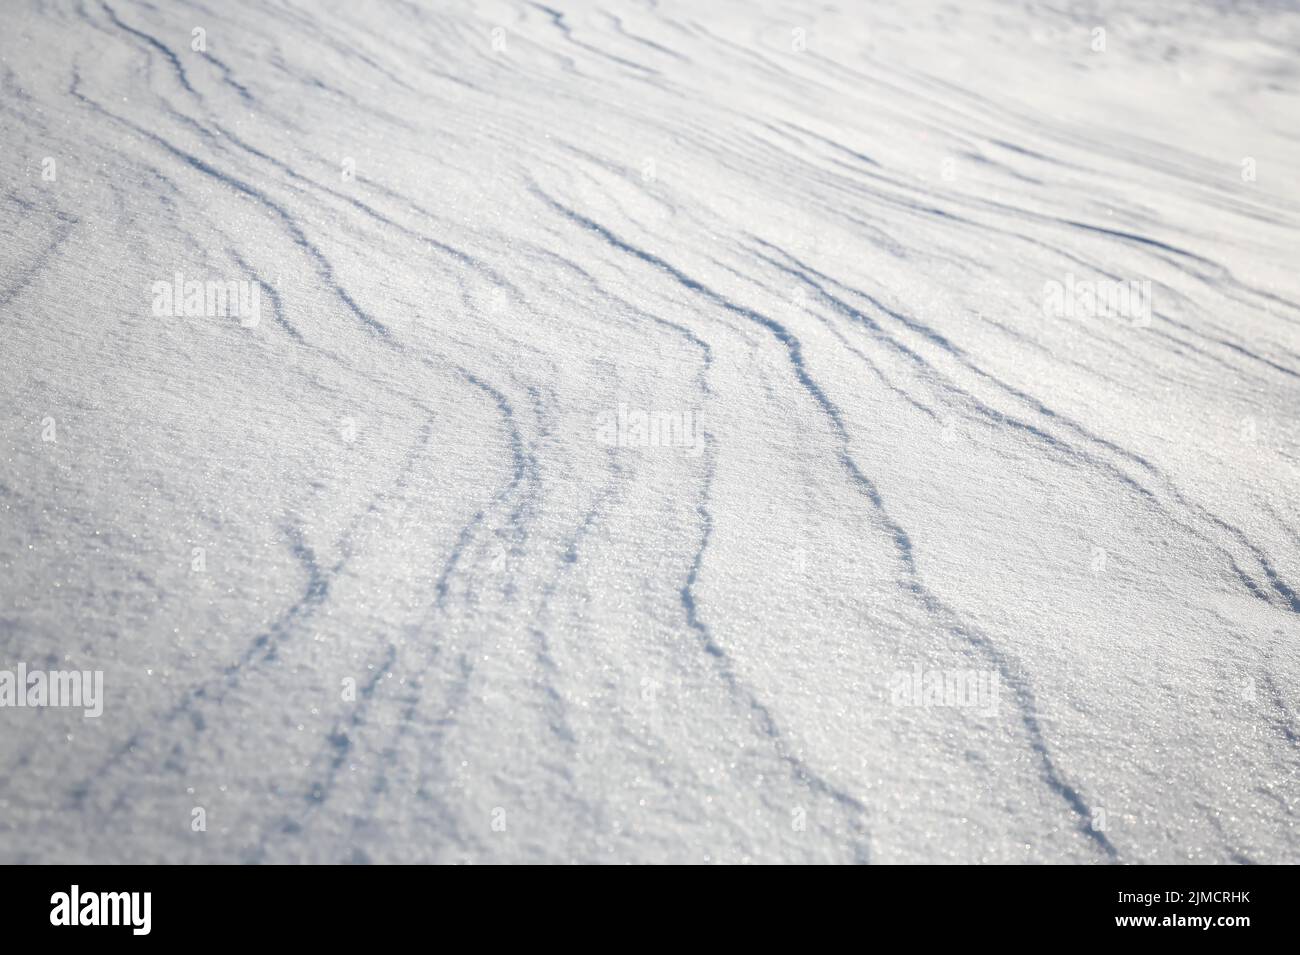 Schneeverwehungen, die durch den Wind aus Pulverschnee verursacht werden, wirken wie Dünen und bilden bizarre Muster und Strukturen Stockfoto